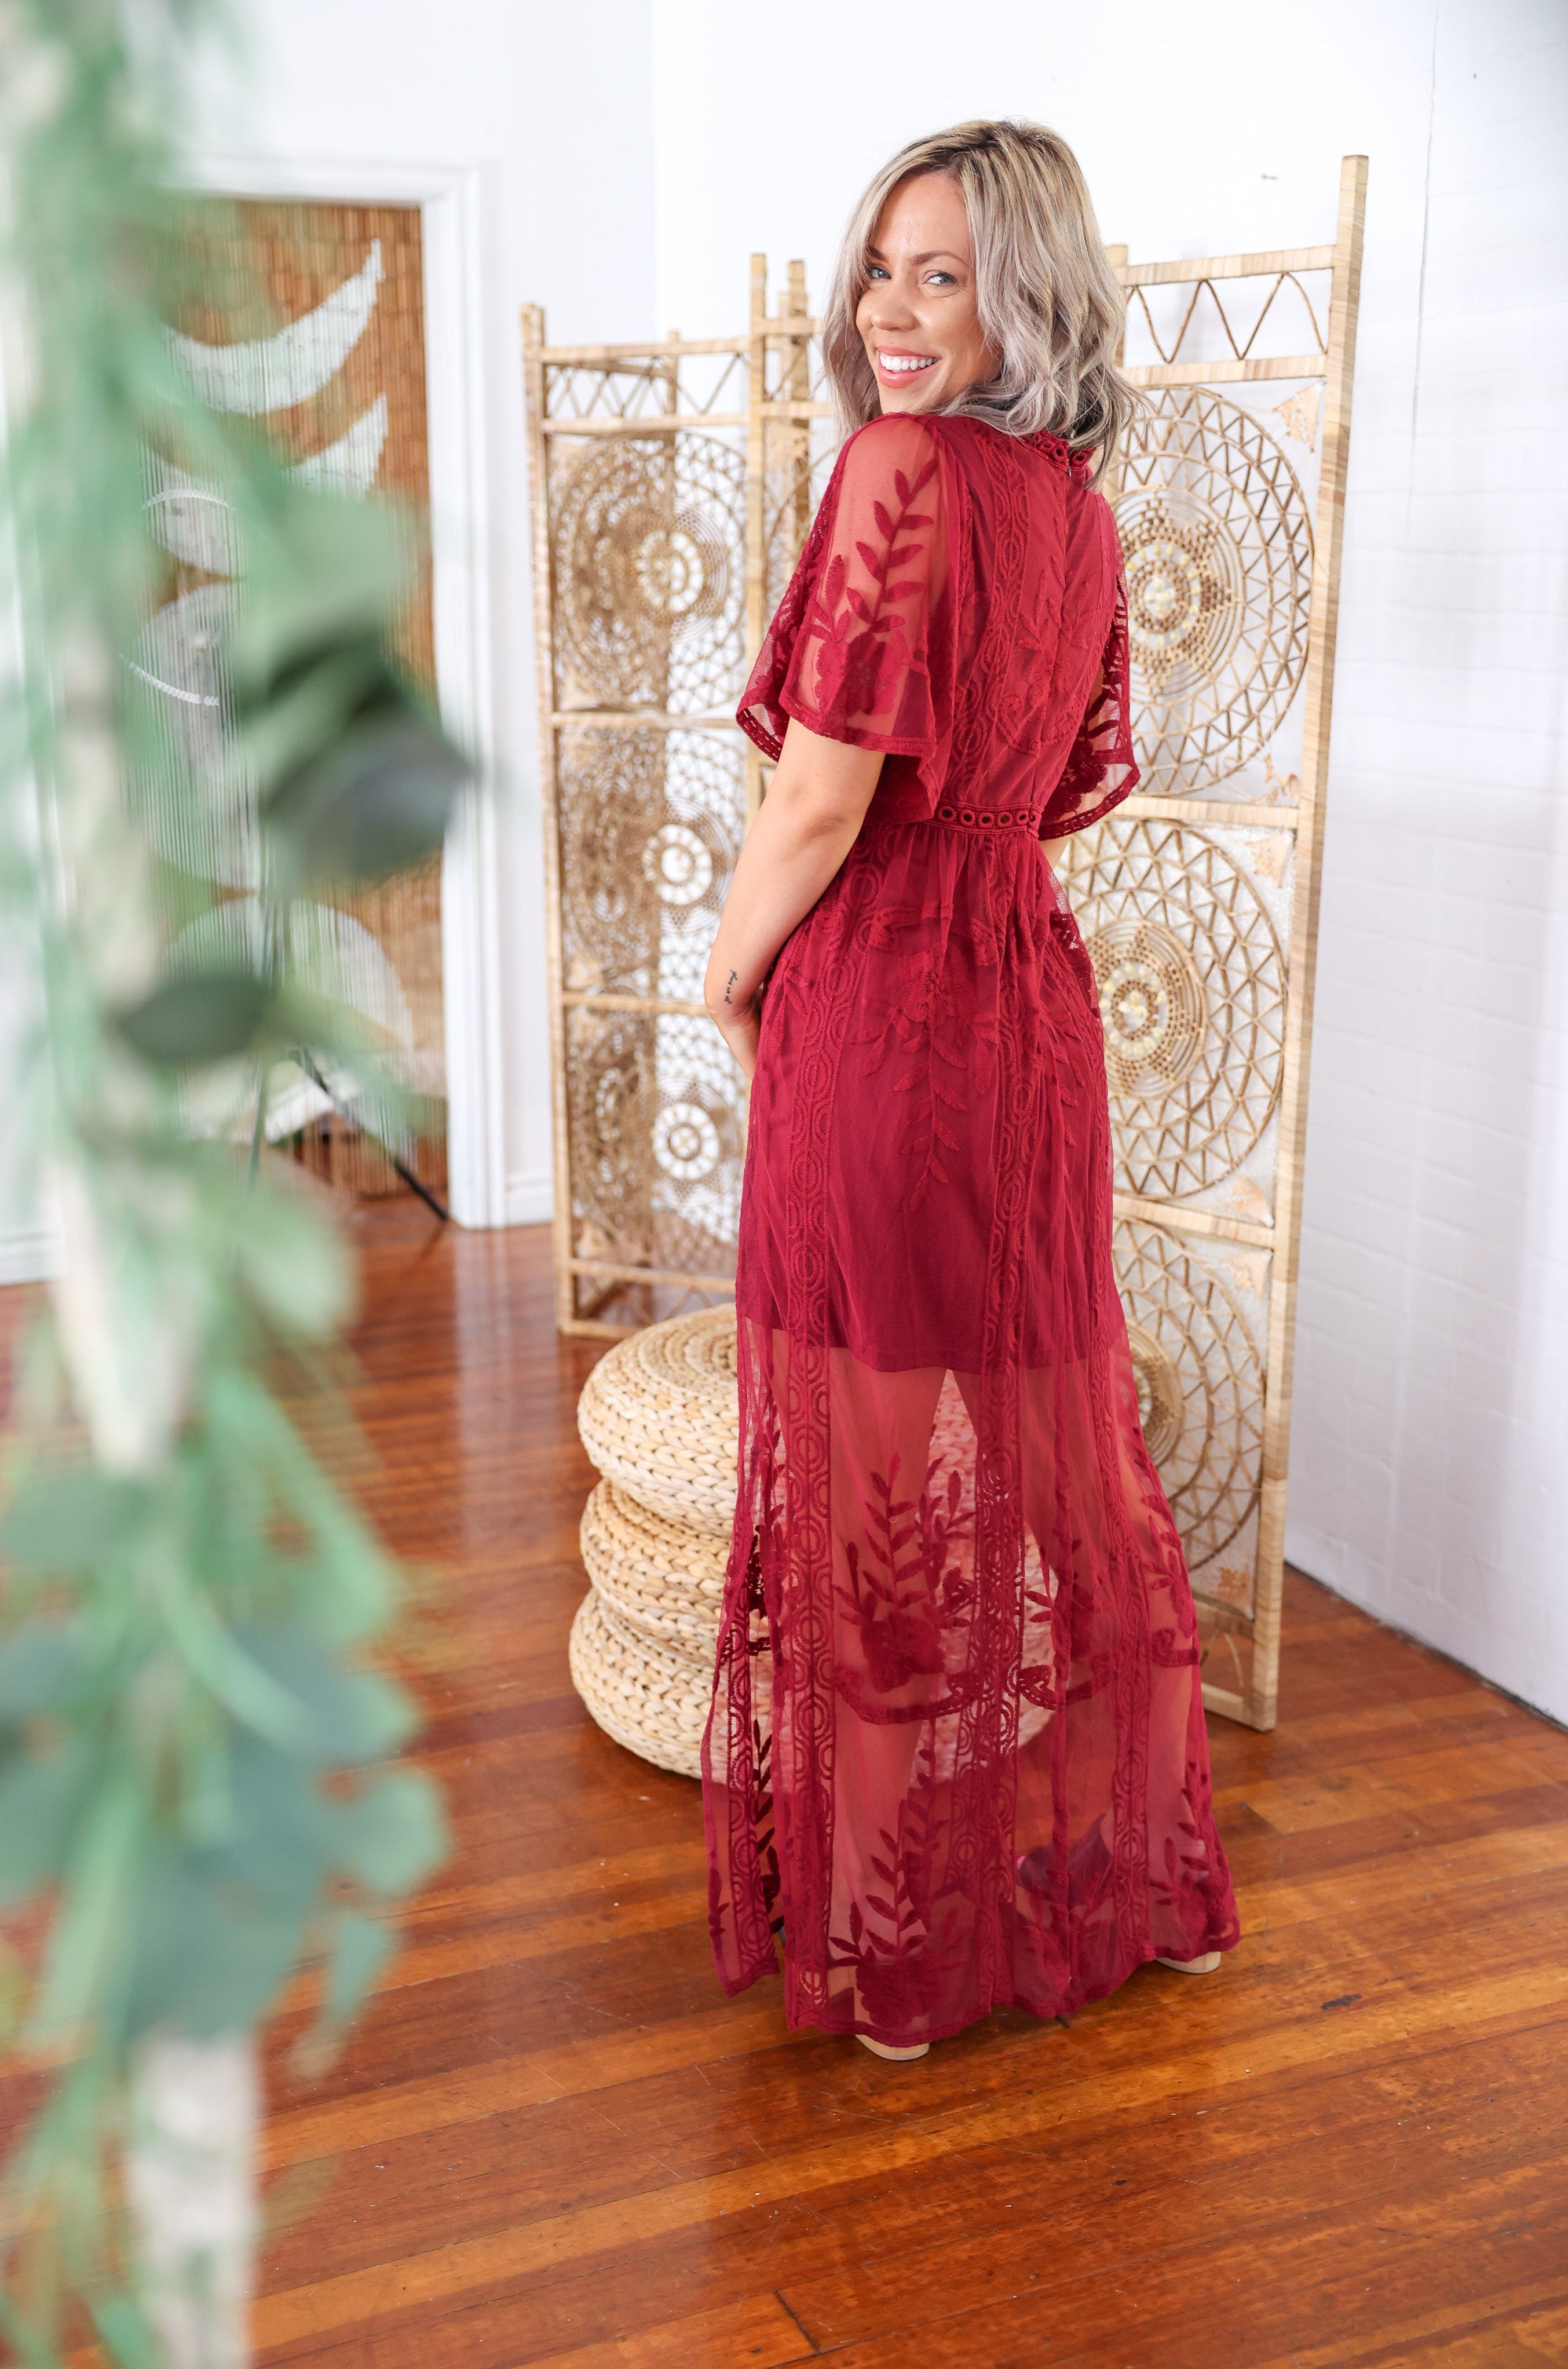 Elegance & Lace - Dress Boutique Simplified